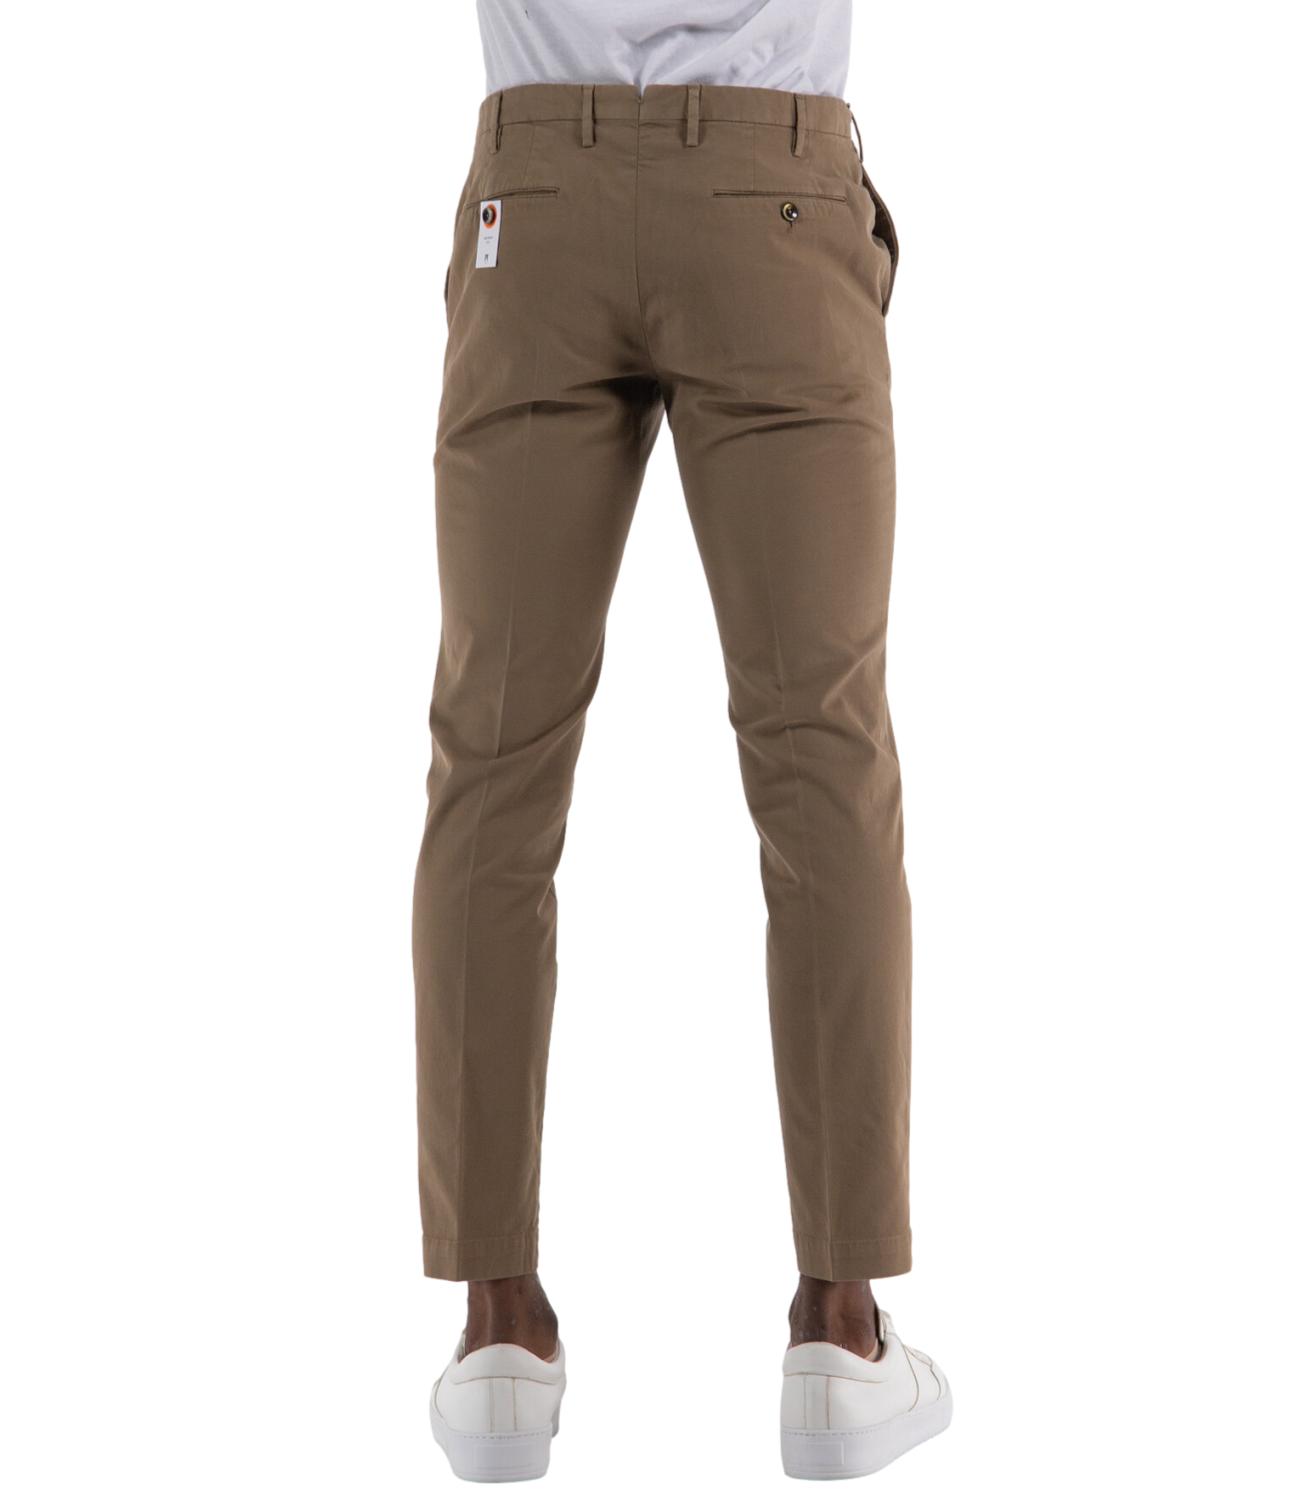 Pantalone PT Torino uomo color cammello coloniale L.30